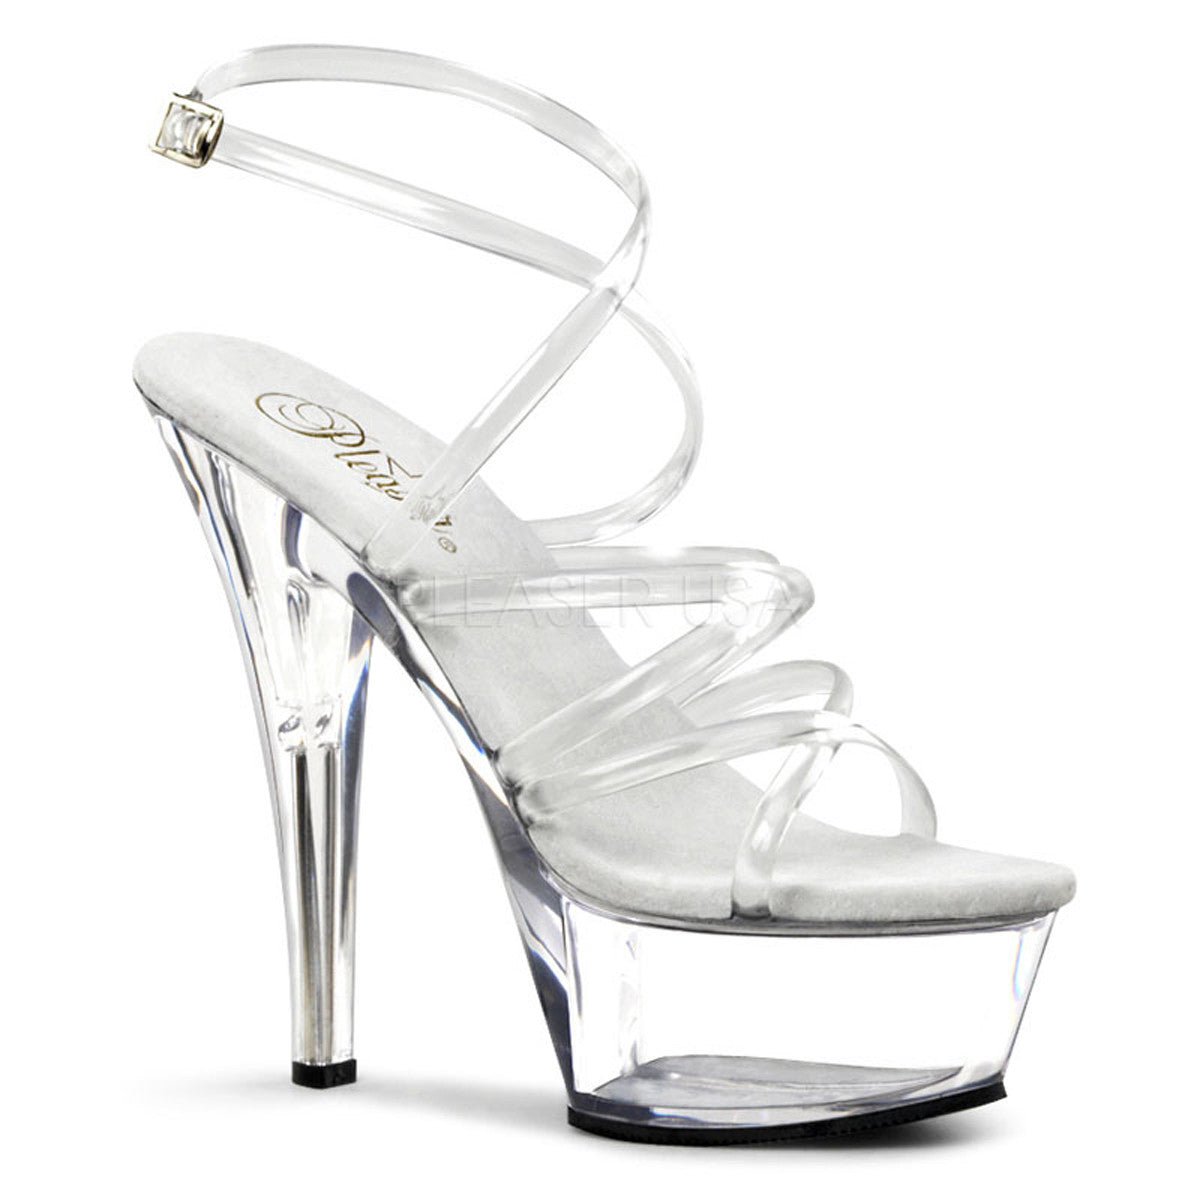 PLEASER KISS-206 Clear Platform Sandals - Shoecup.com